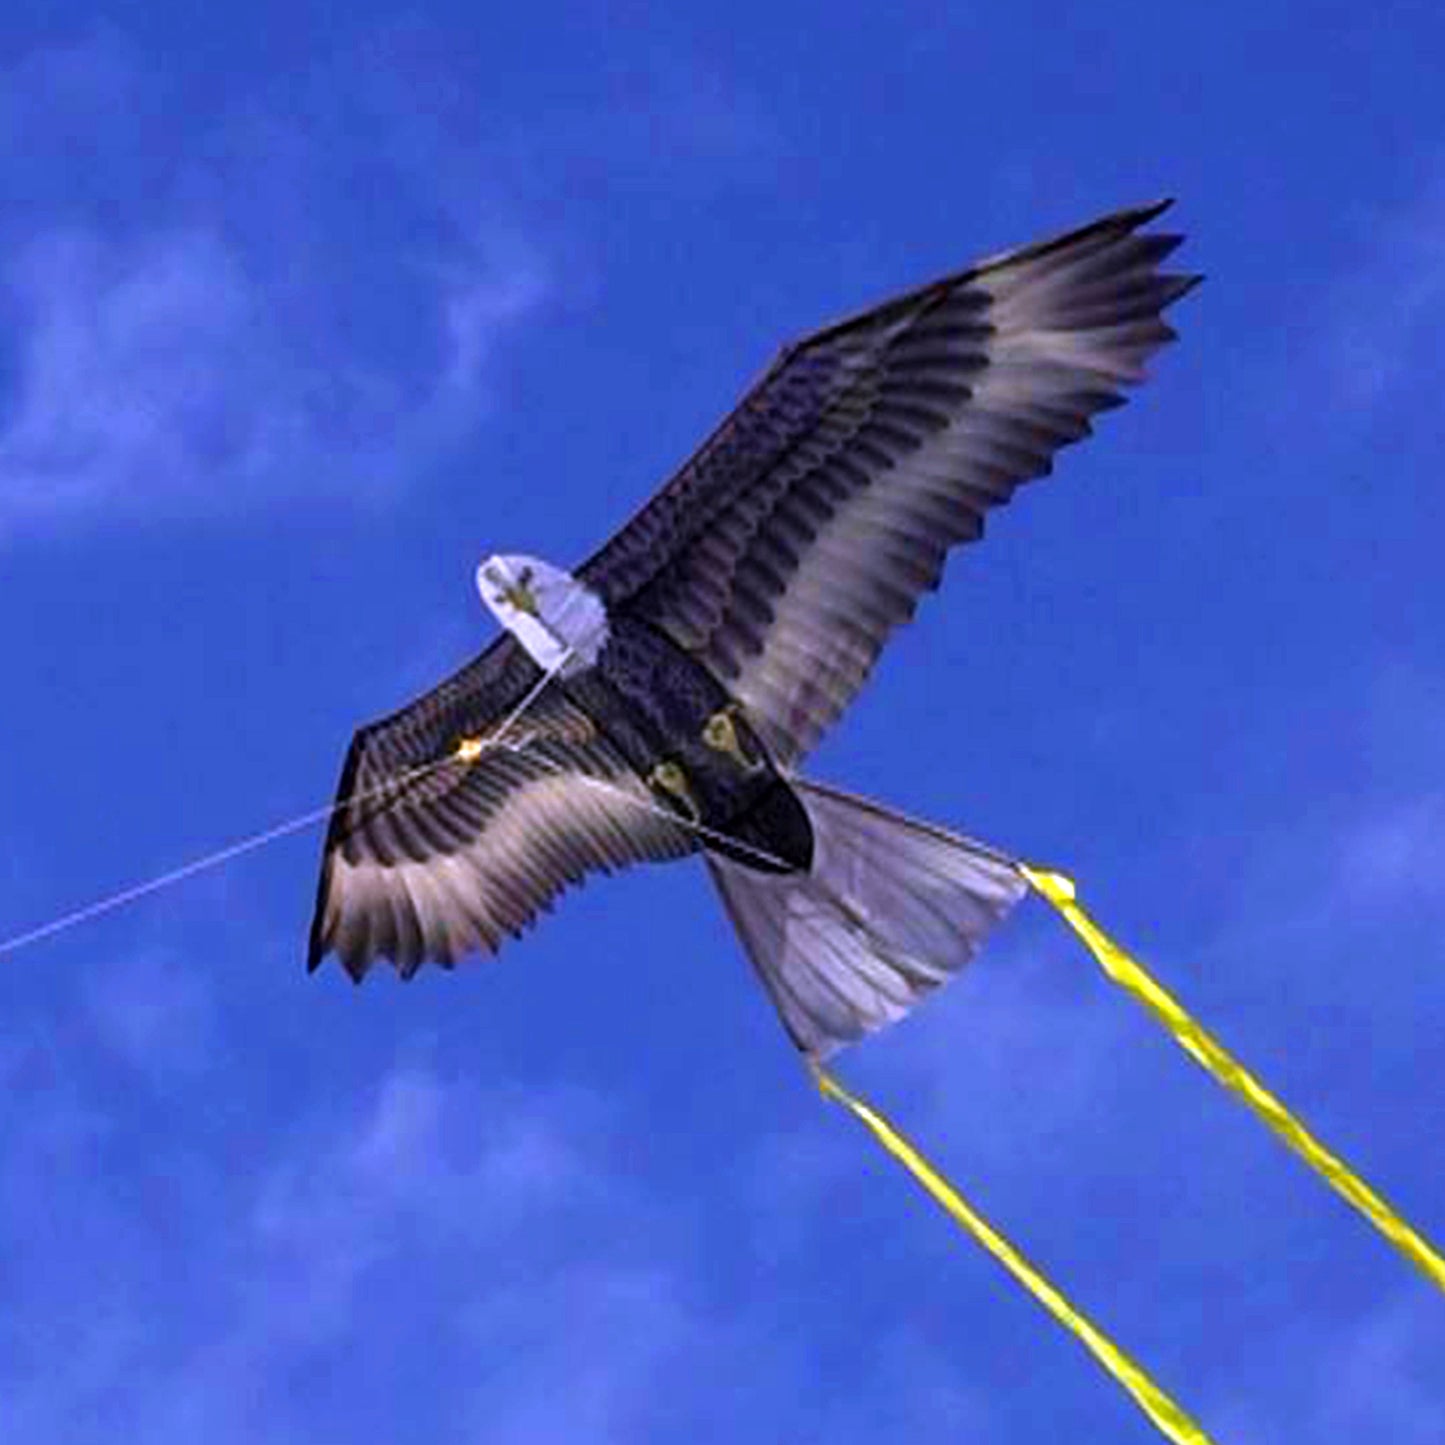 windnsun supersize 2d eagle nylon kite flying